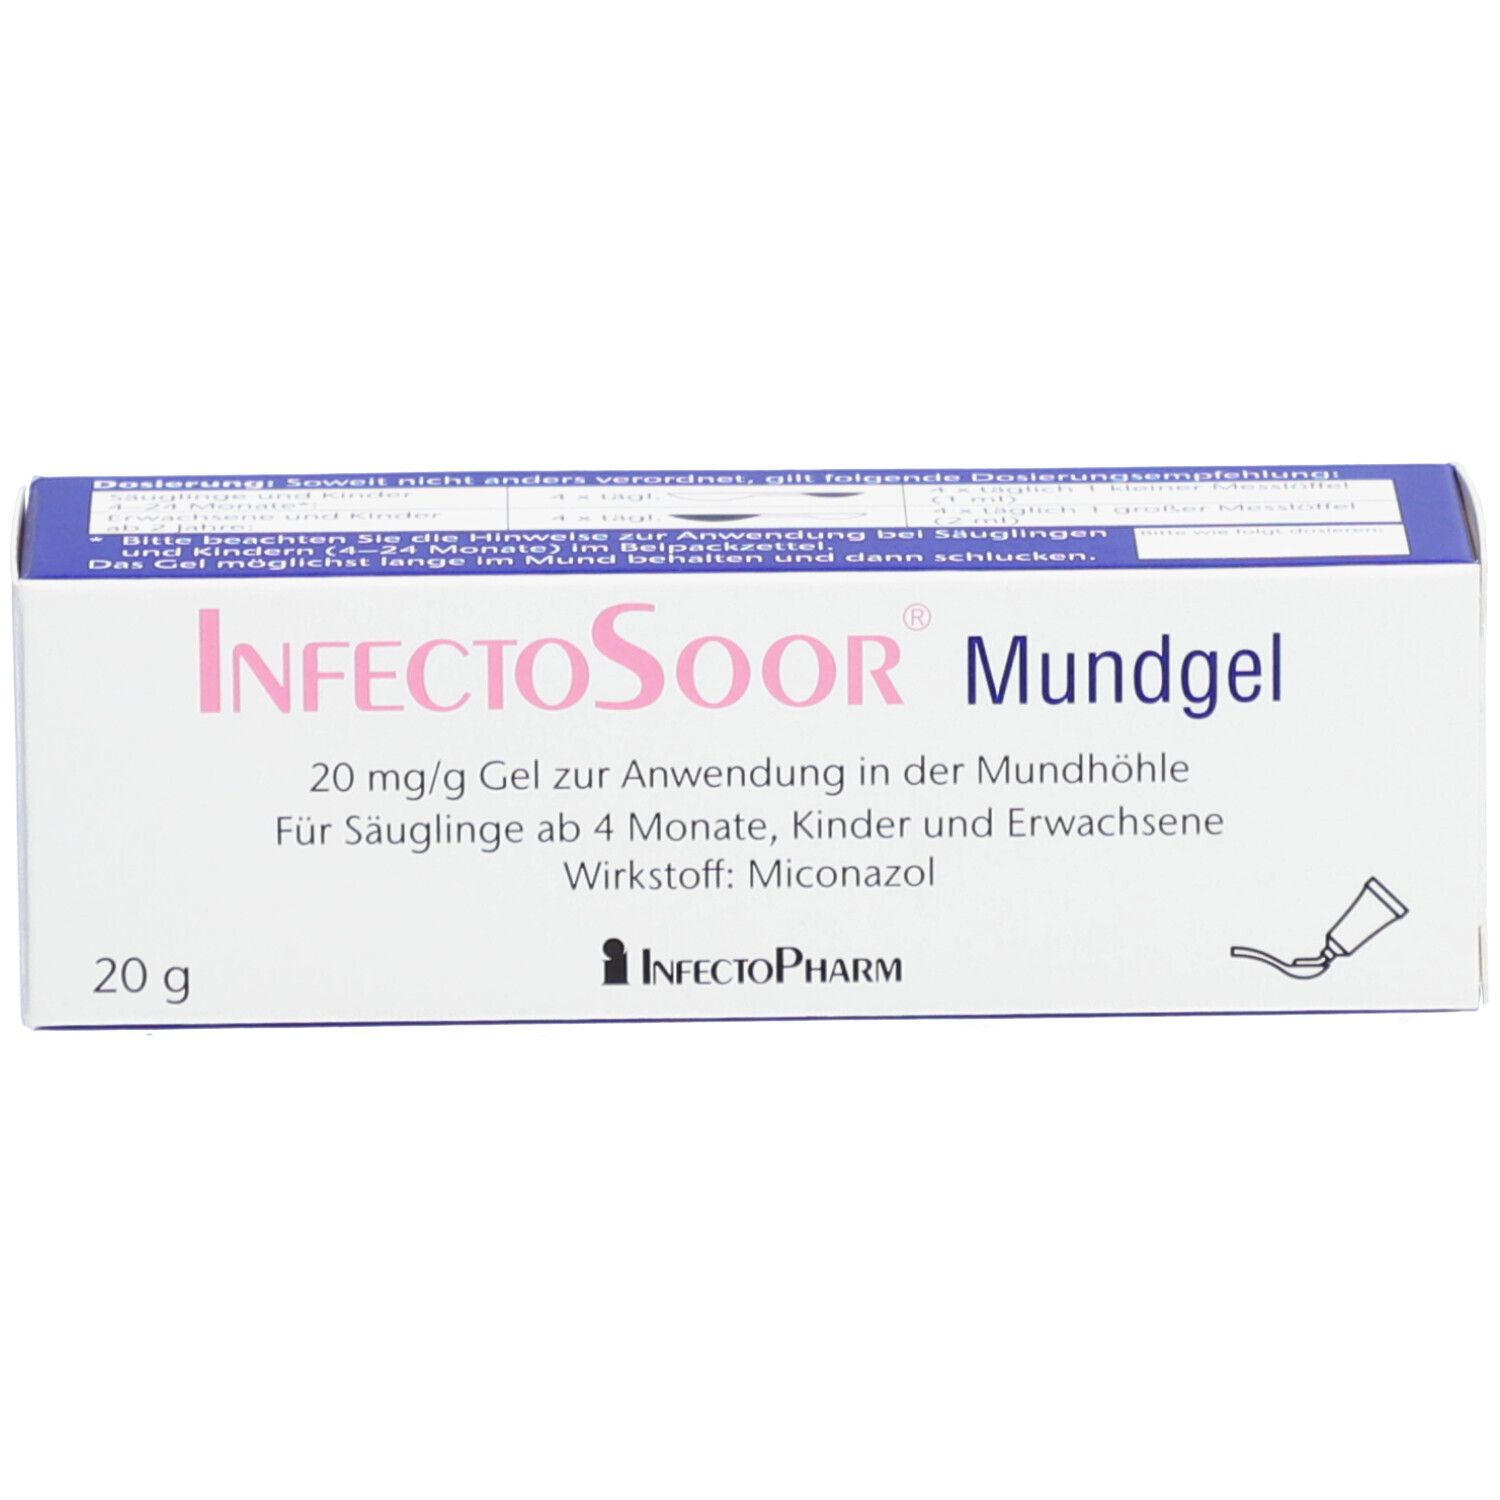 InfectoSoor® Mundgel